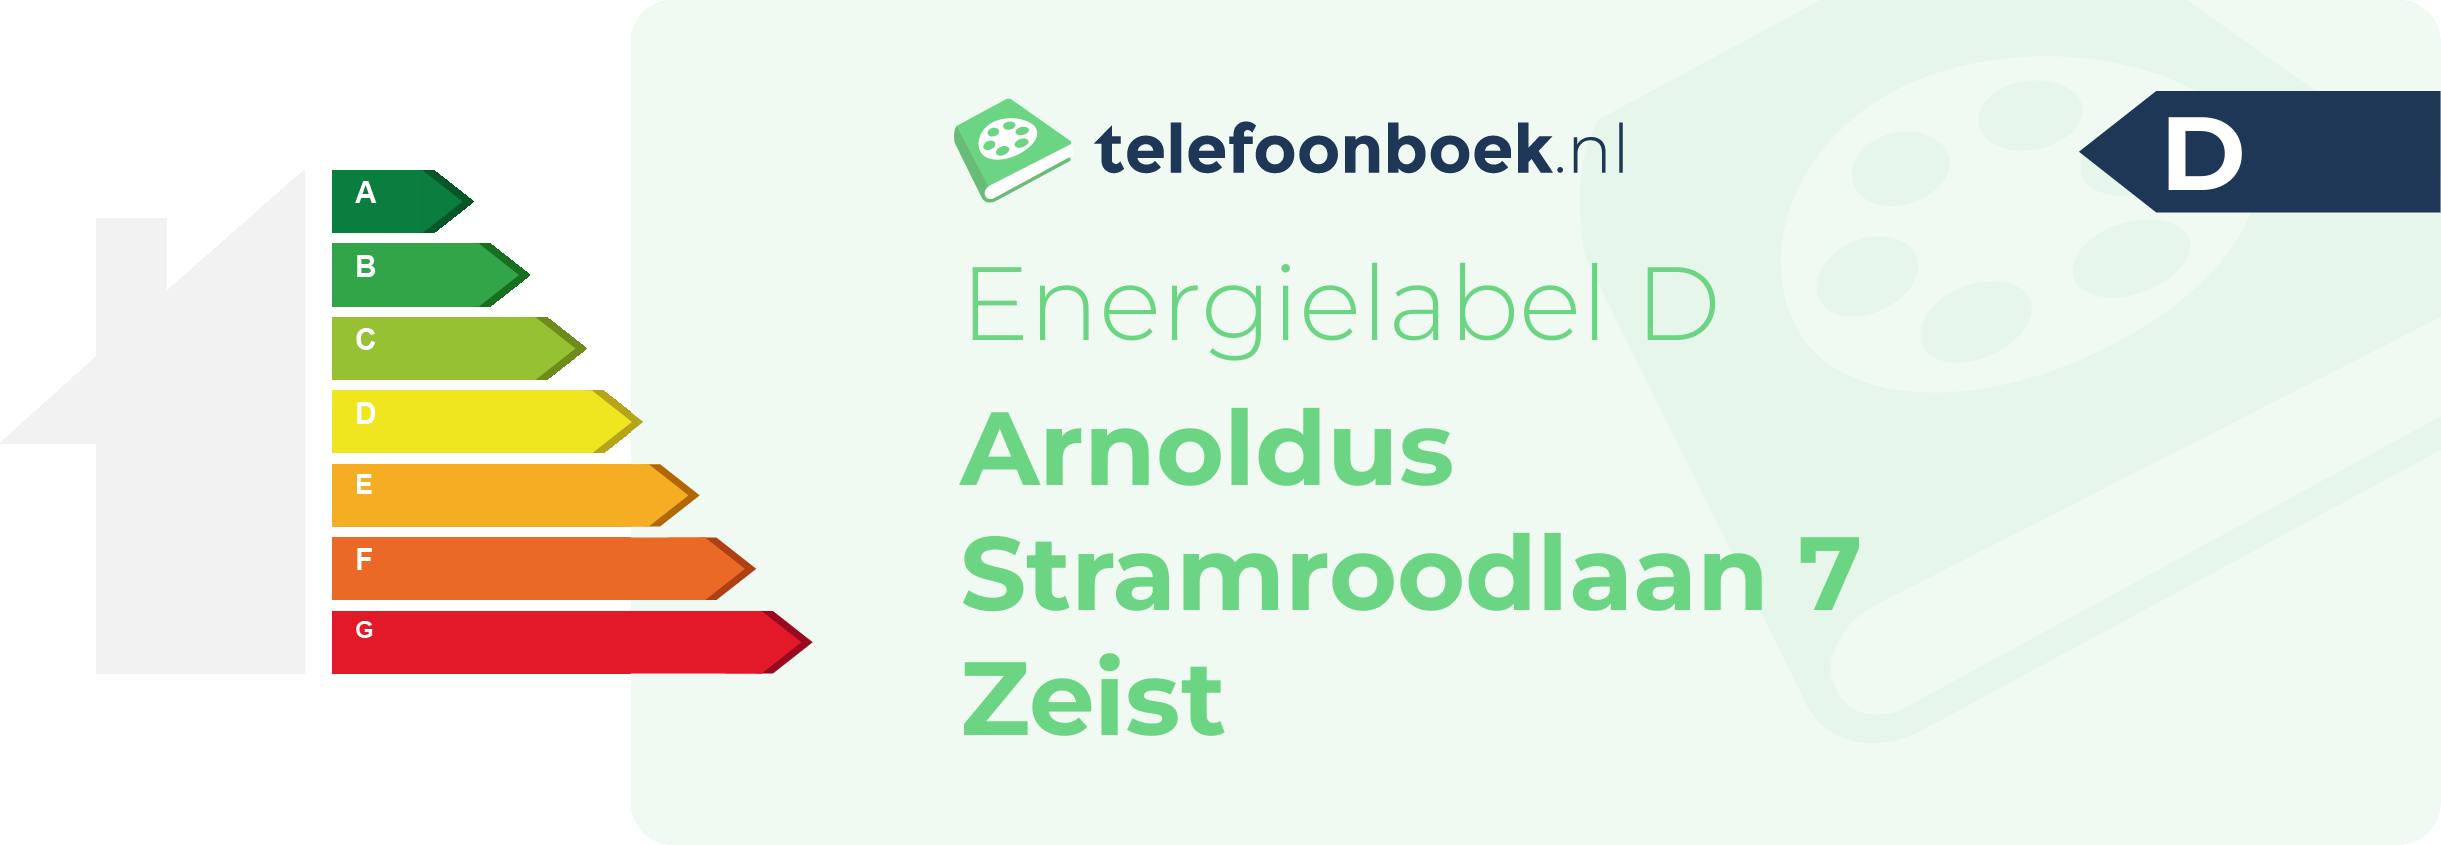 Energielabel Arnoldus Stramroodlaan 7 Zeist